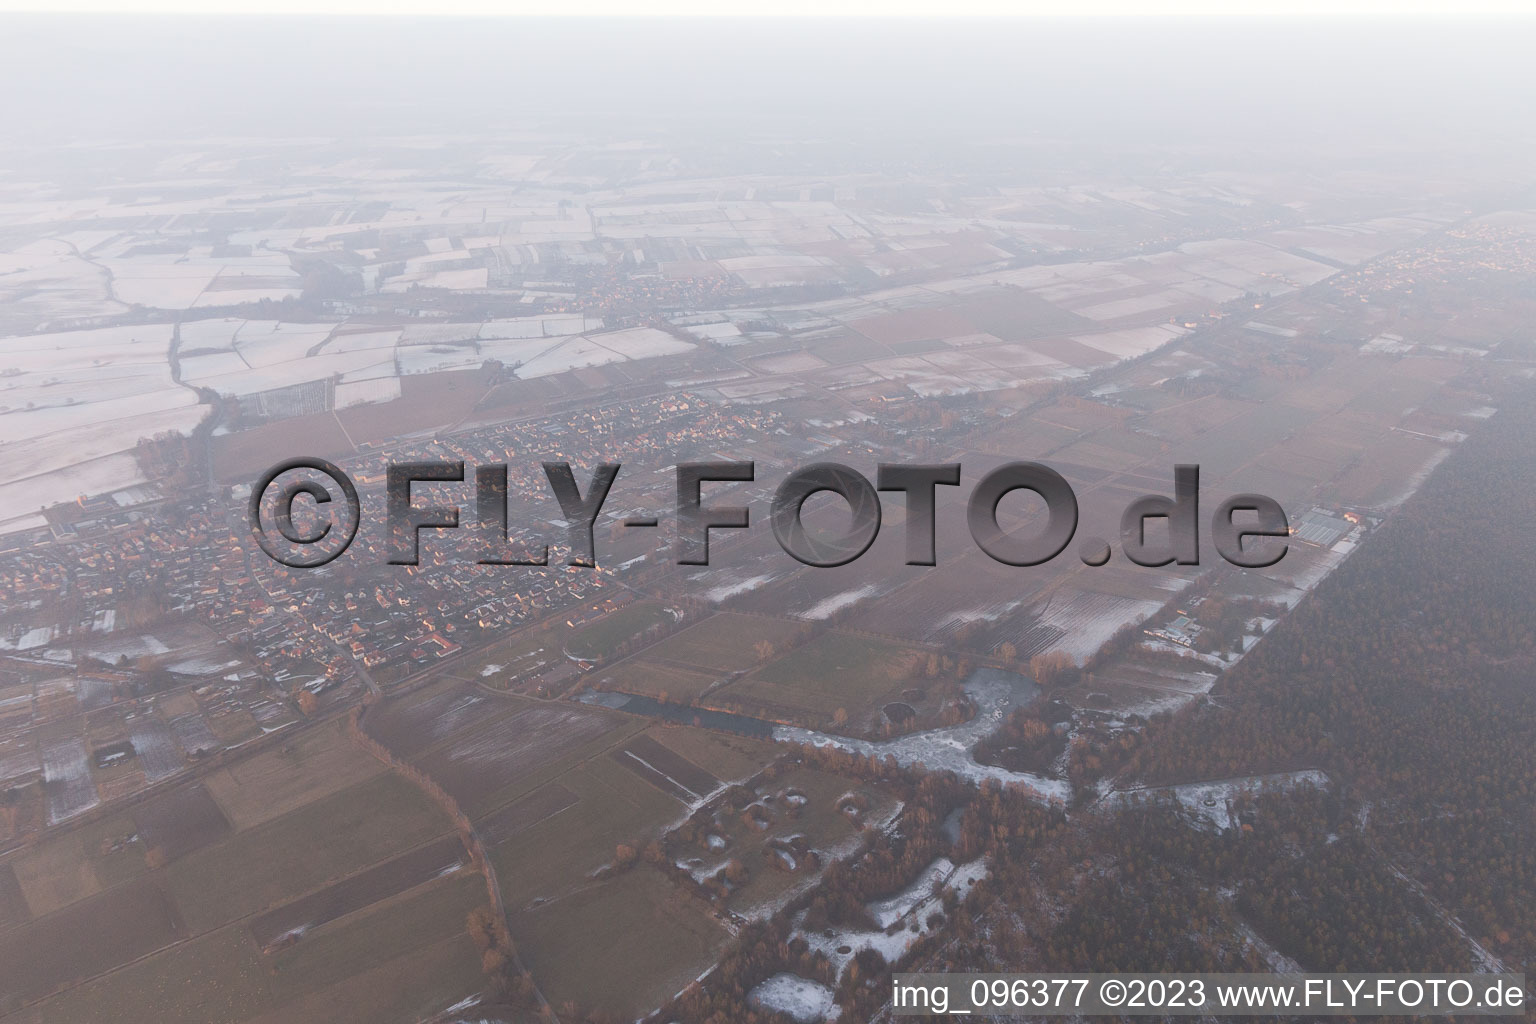 Steinfeld im Bundesland Rheinland-Pfalz, Deutschland aus der Drohnenperspektive